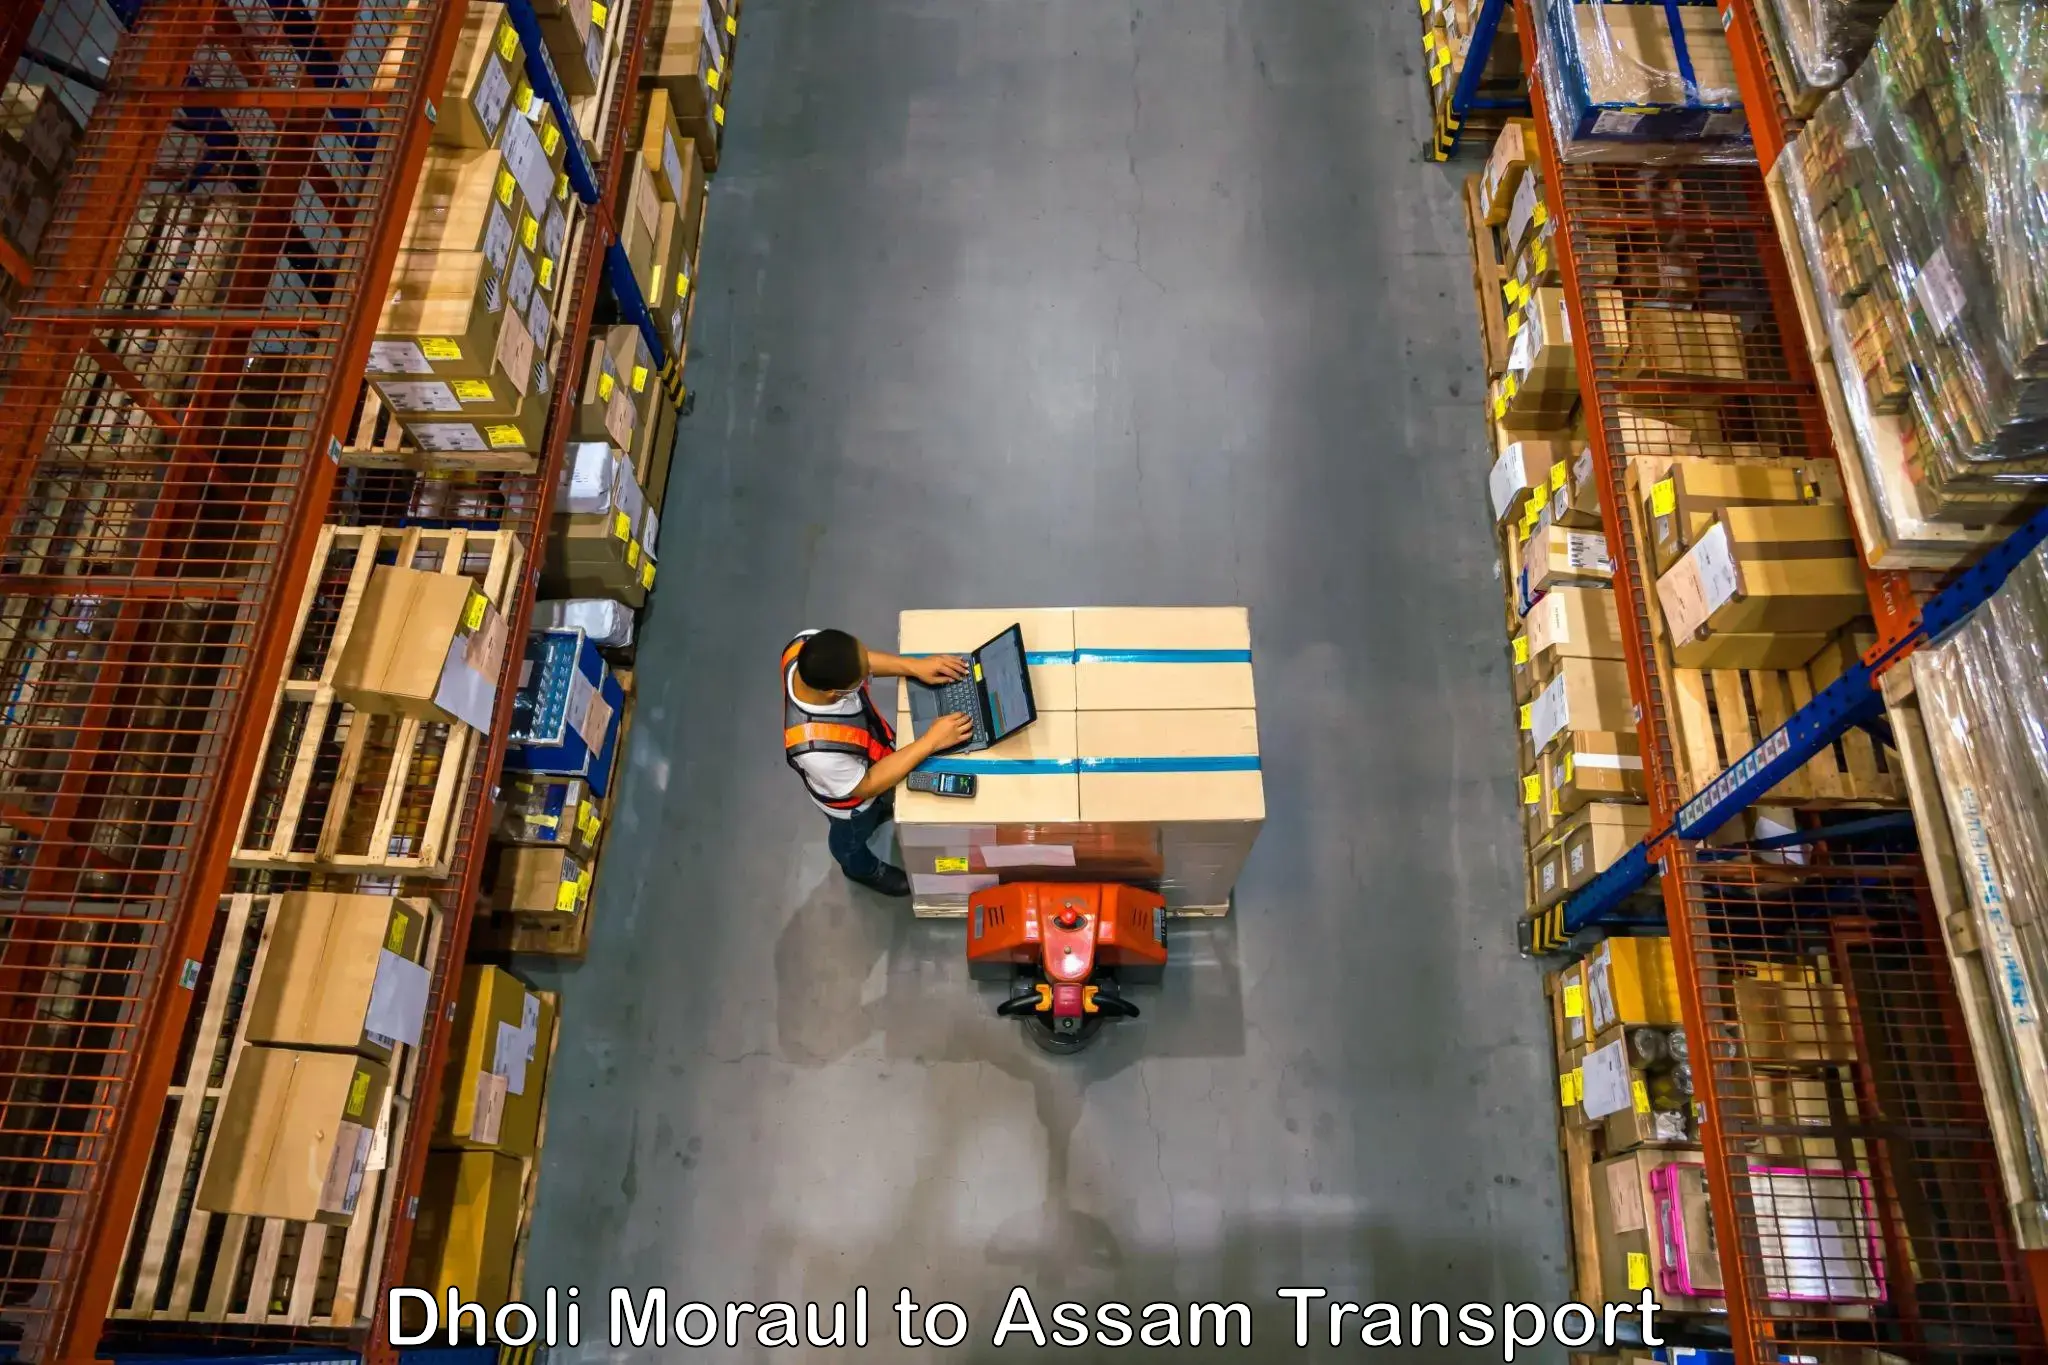 Parcel transport services Dholi Moraul to Dhubri